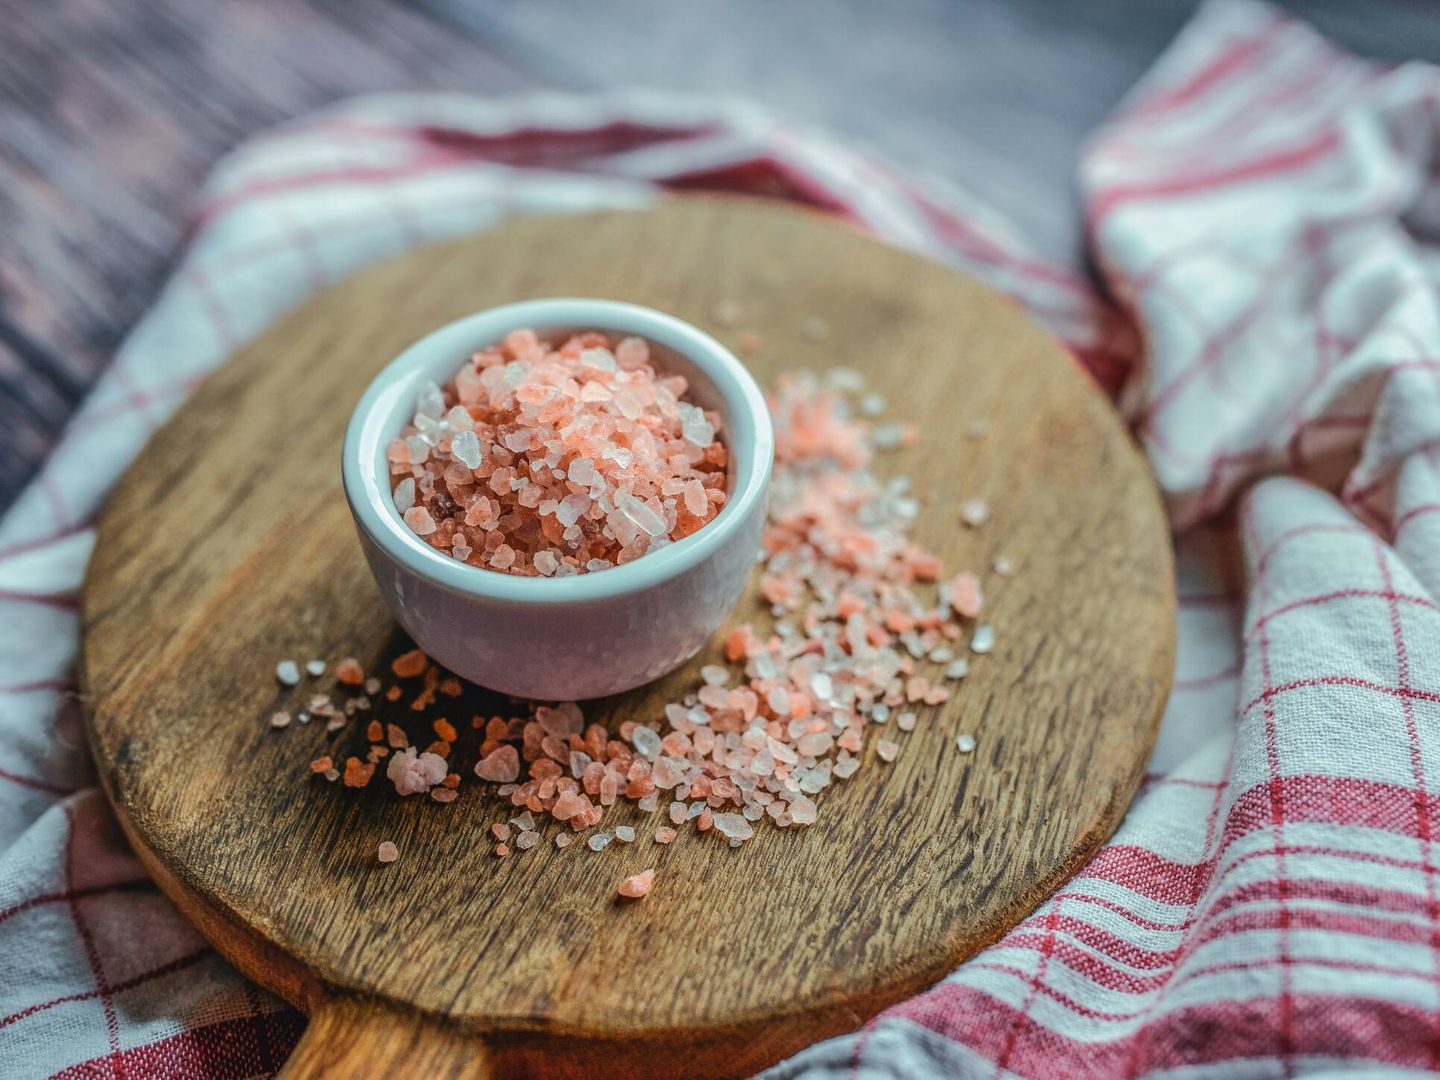 Añadir sal frecuentemente a los alimentos puede aumentar el riesgo de diabetes tipo 2 hasta en un 39%. (Pexels)